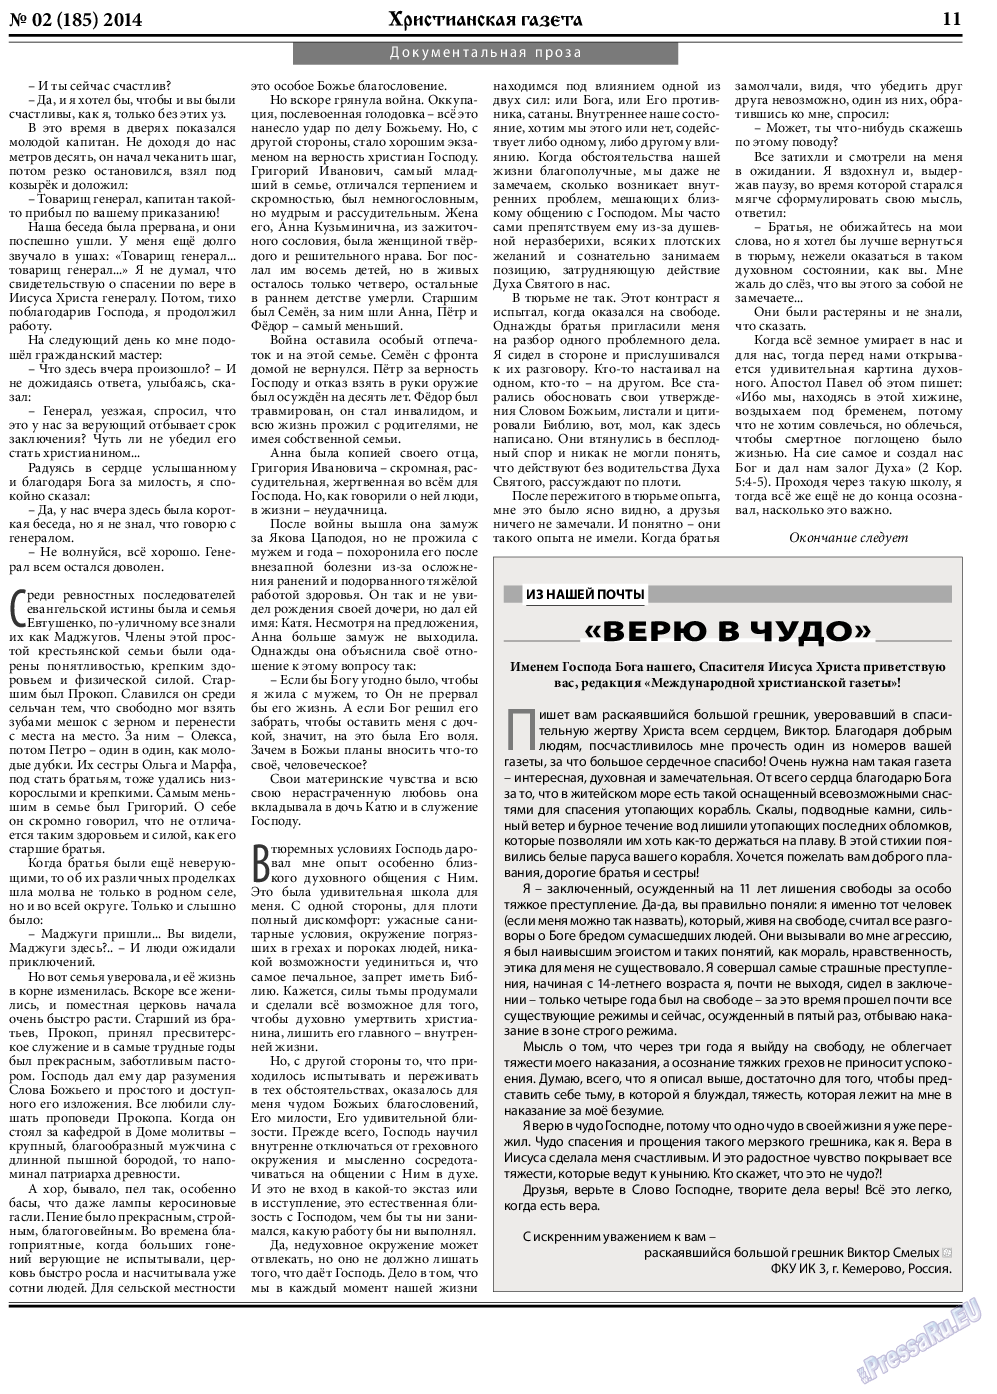 Христианская газета, газета. 2014 №2 стр.11